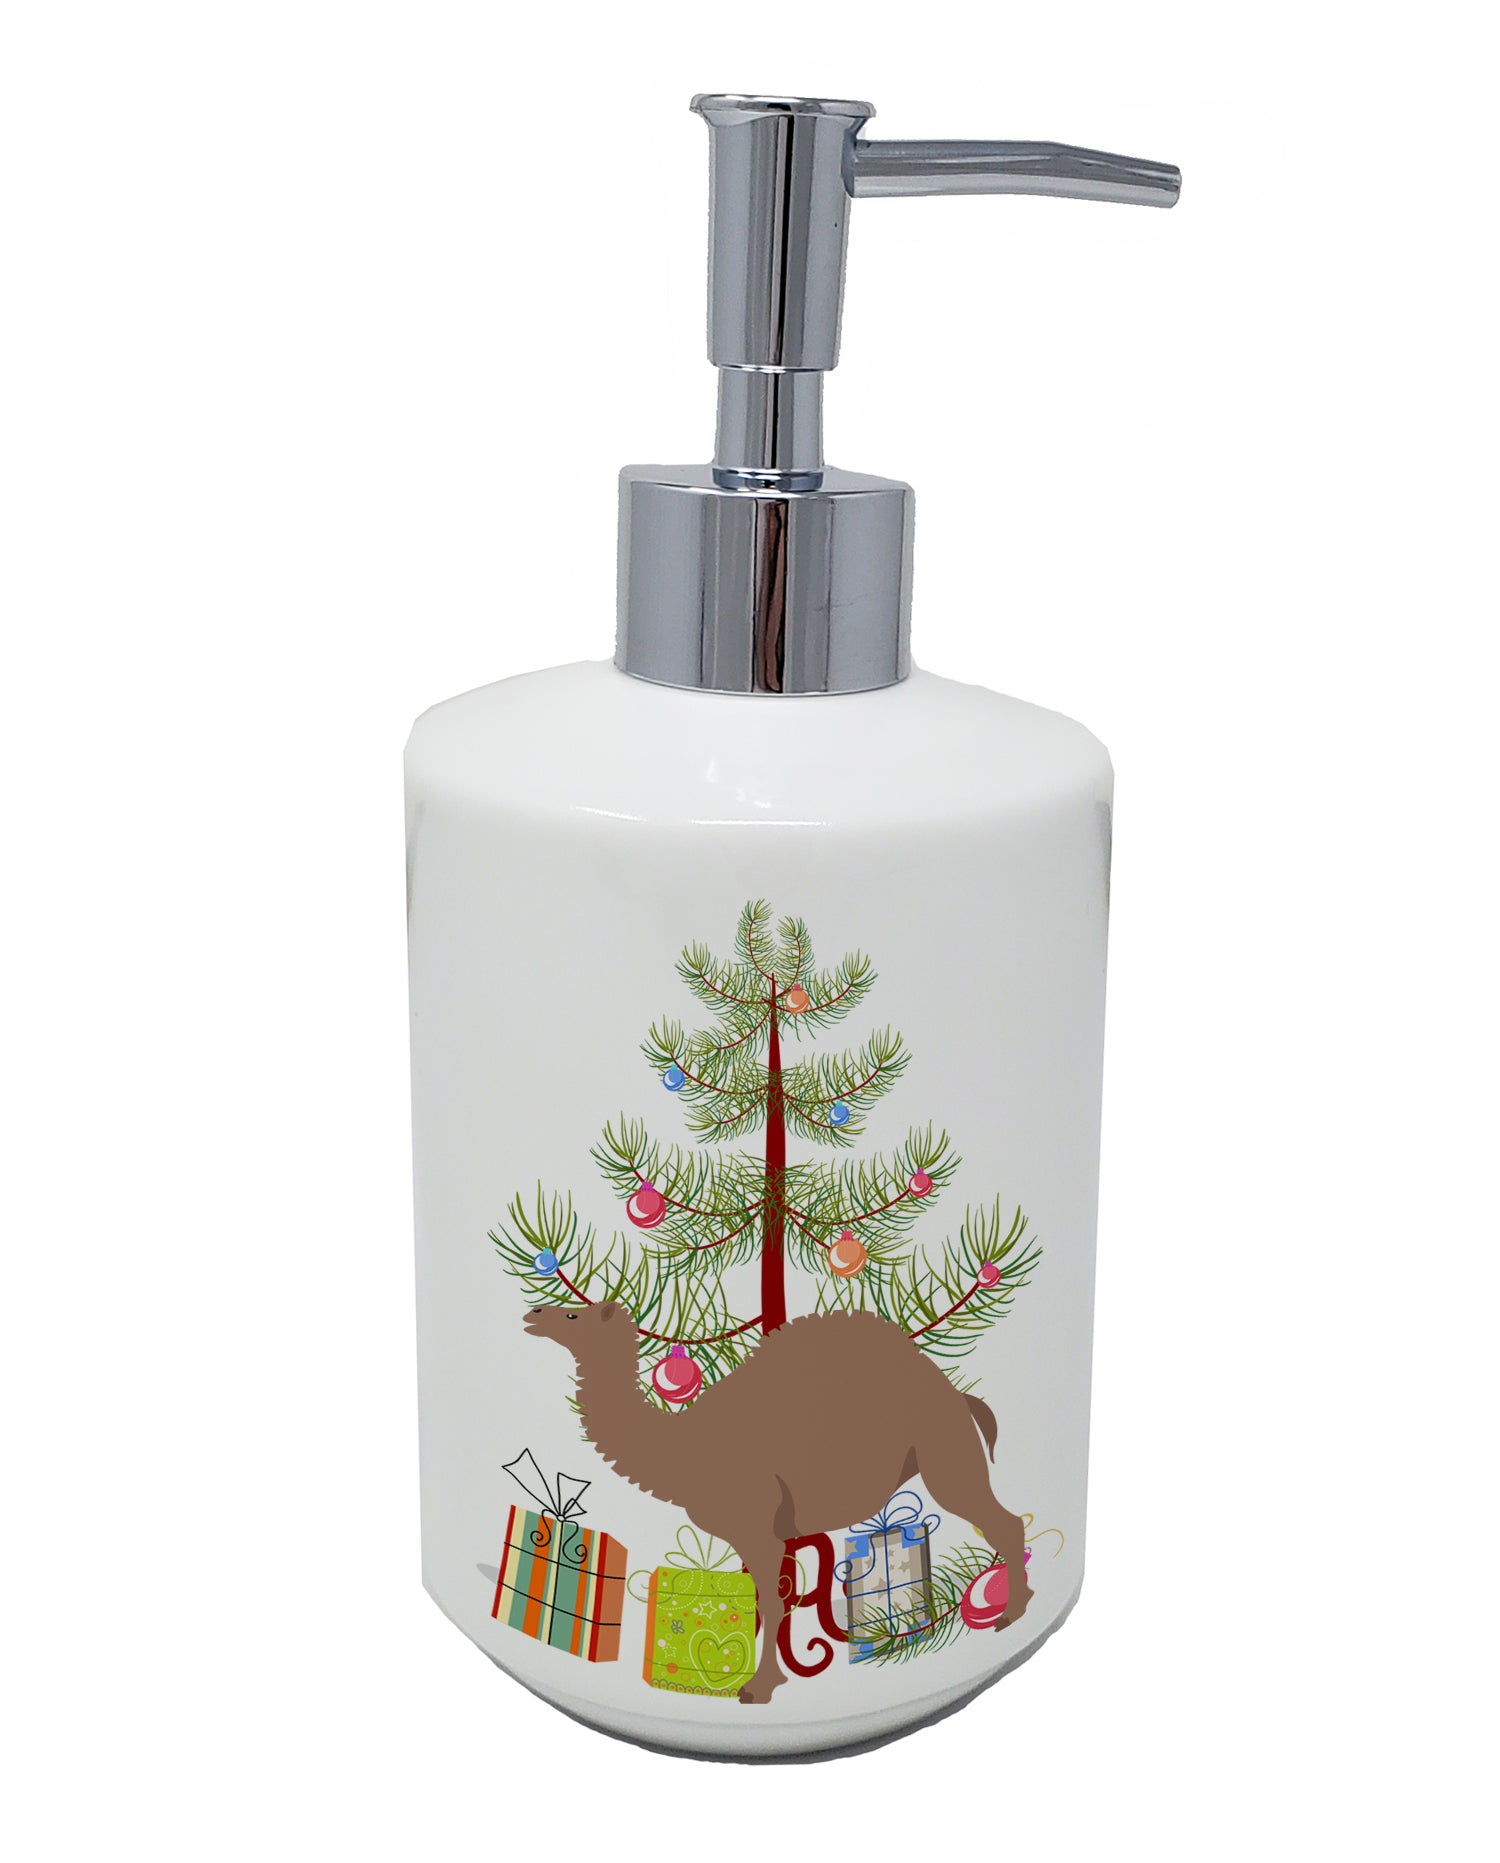 Buy this F1 Hybrid Camel Christmas Ceramic Soap Dispenser